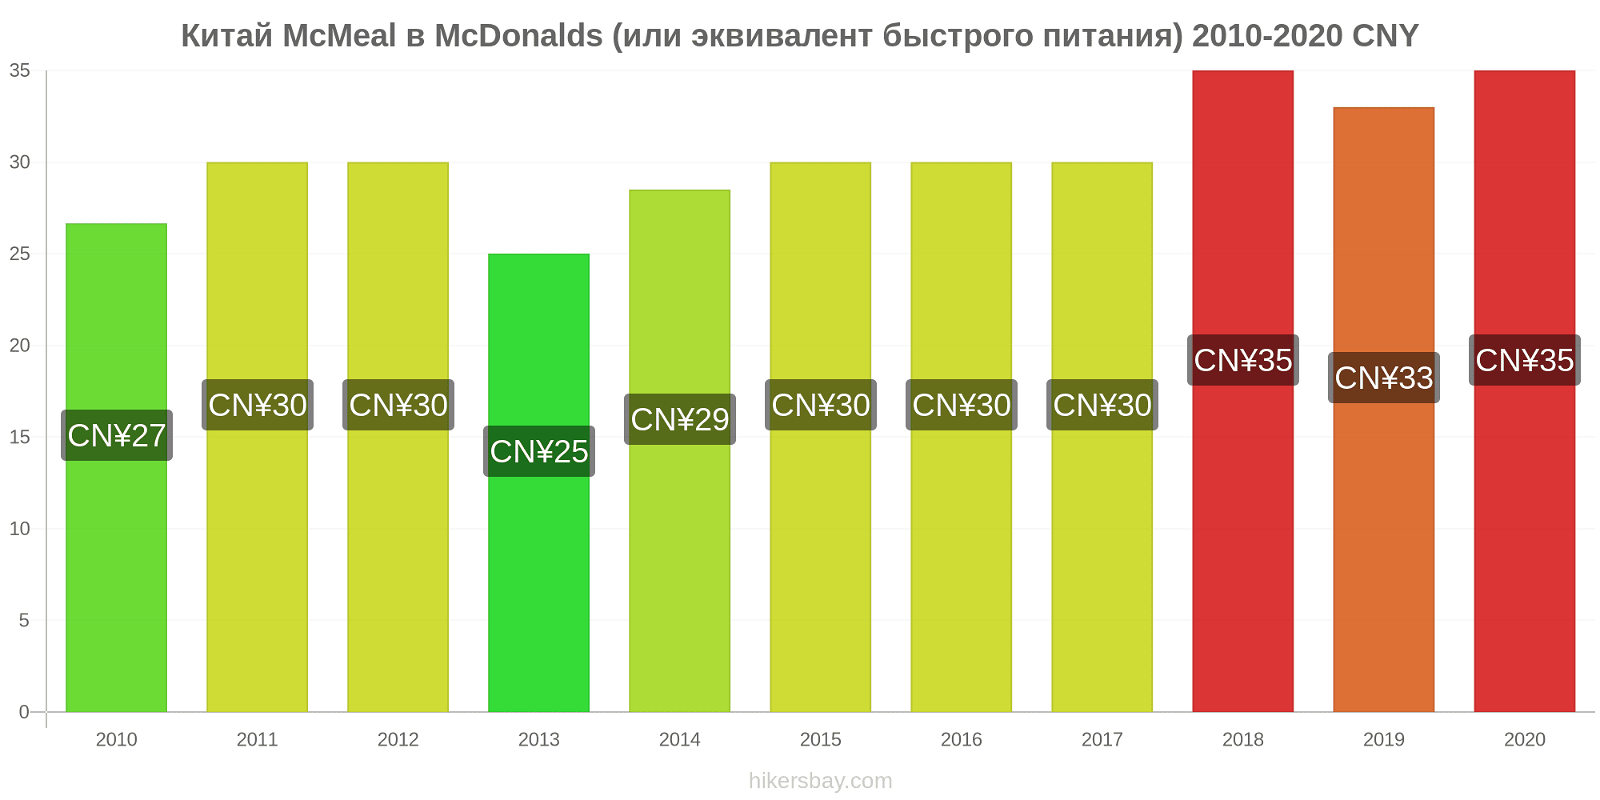 Китай изменения цен McMeal в McDonalds (или эквивалент быстрого питания) hikersbay.com